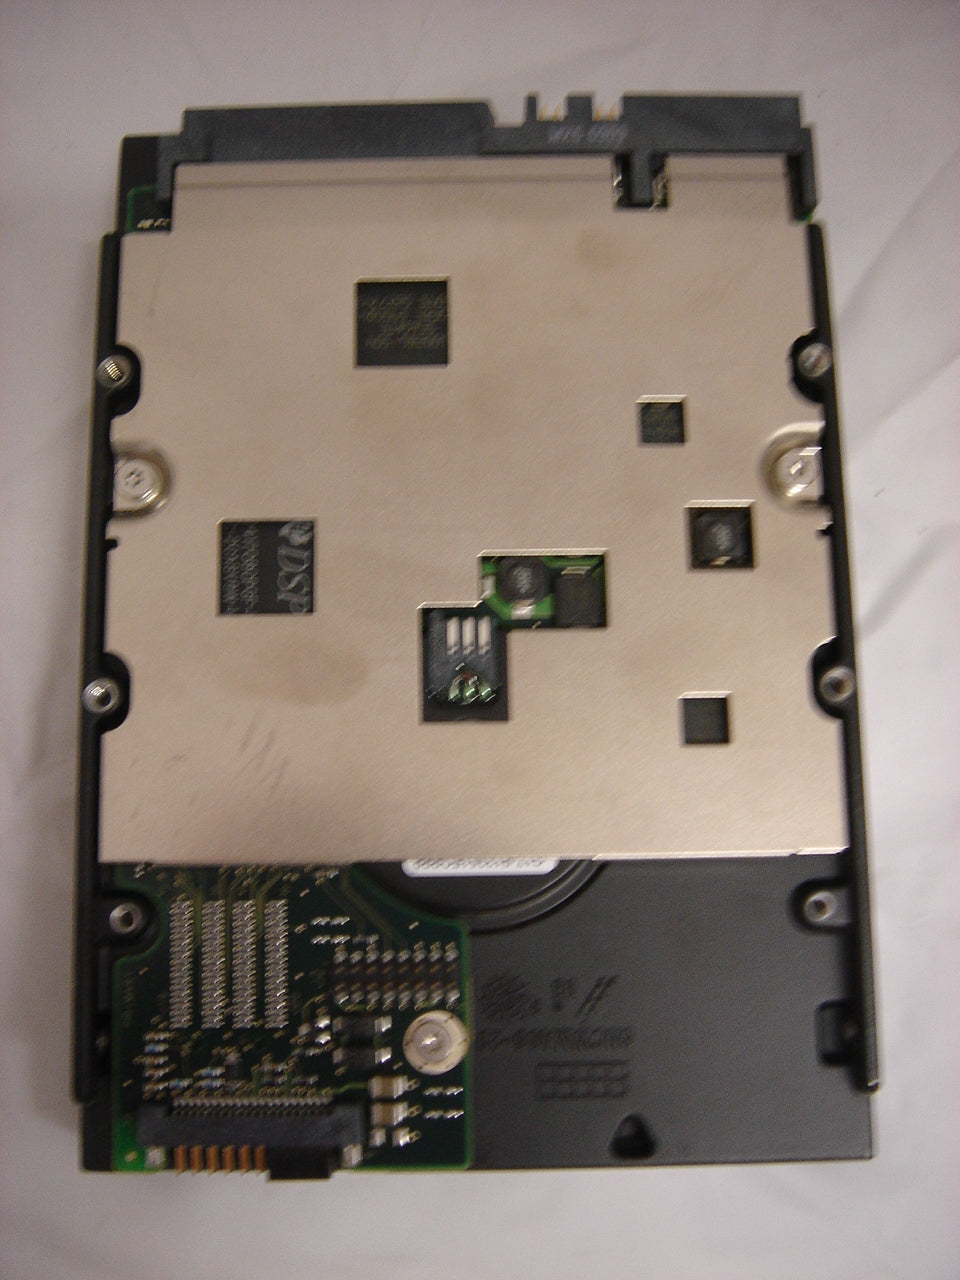 MC5471_9W8005-001_Seagate 18.4GB SCSI 68 Pin 7200rpm 3.5in HDD - Image2